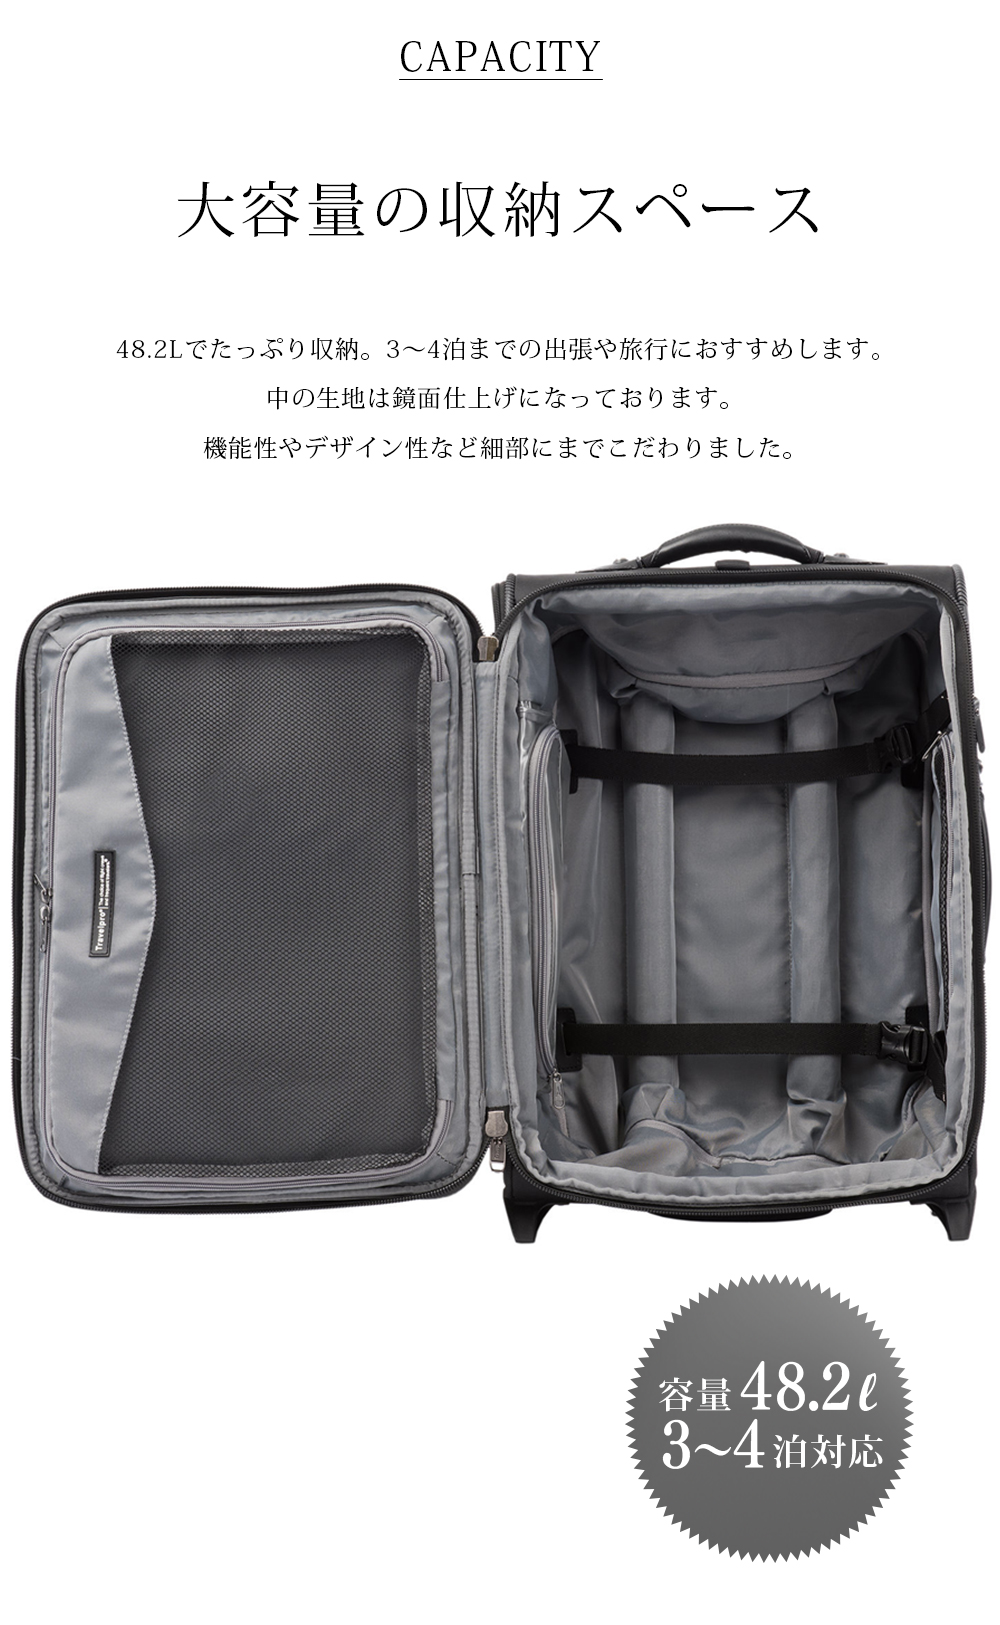 【楽天市場】スーツケース 機内持ち込み 大容量 48.2L 世界のデキるビジネスマンが選ぶ機内持ち込みスーツケース Travelpro